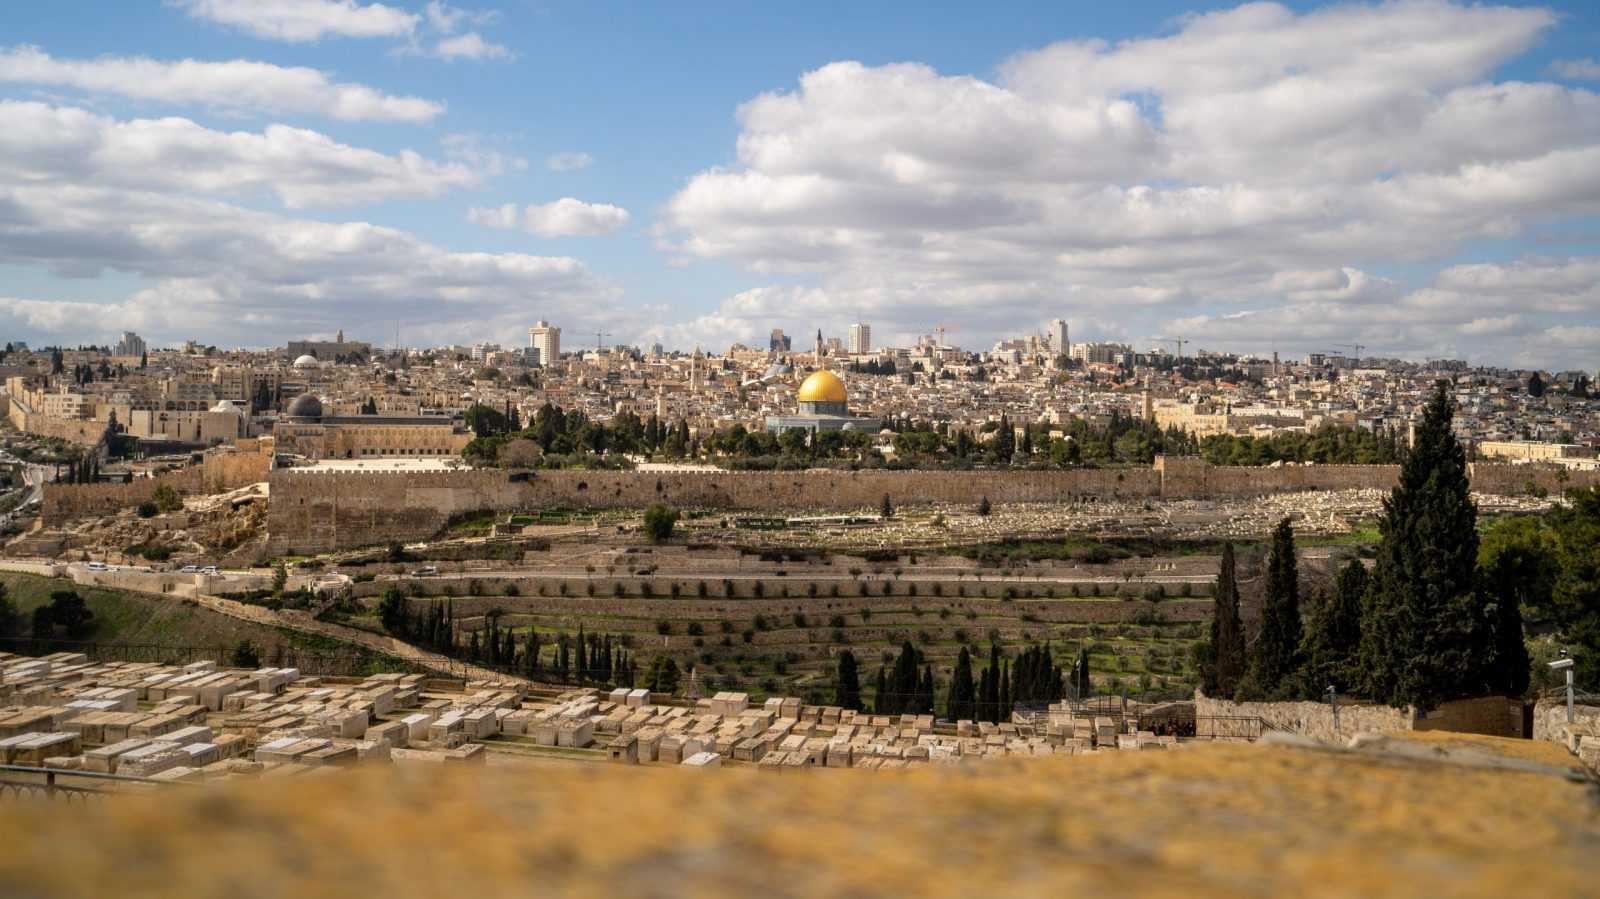 Family vacation in Israel - exploring Jerusalem